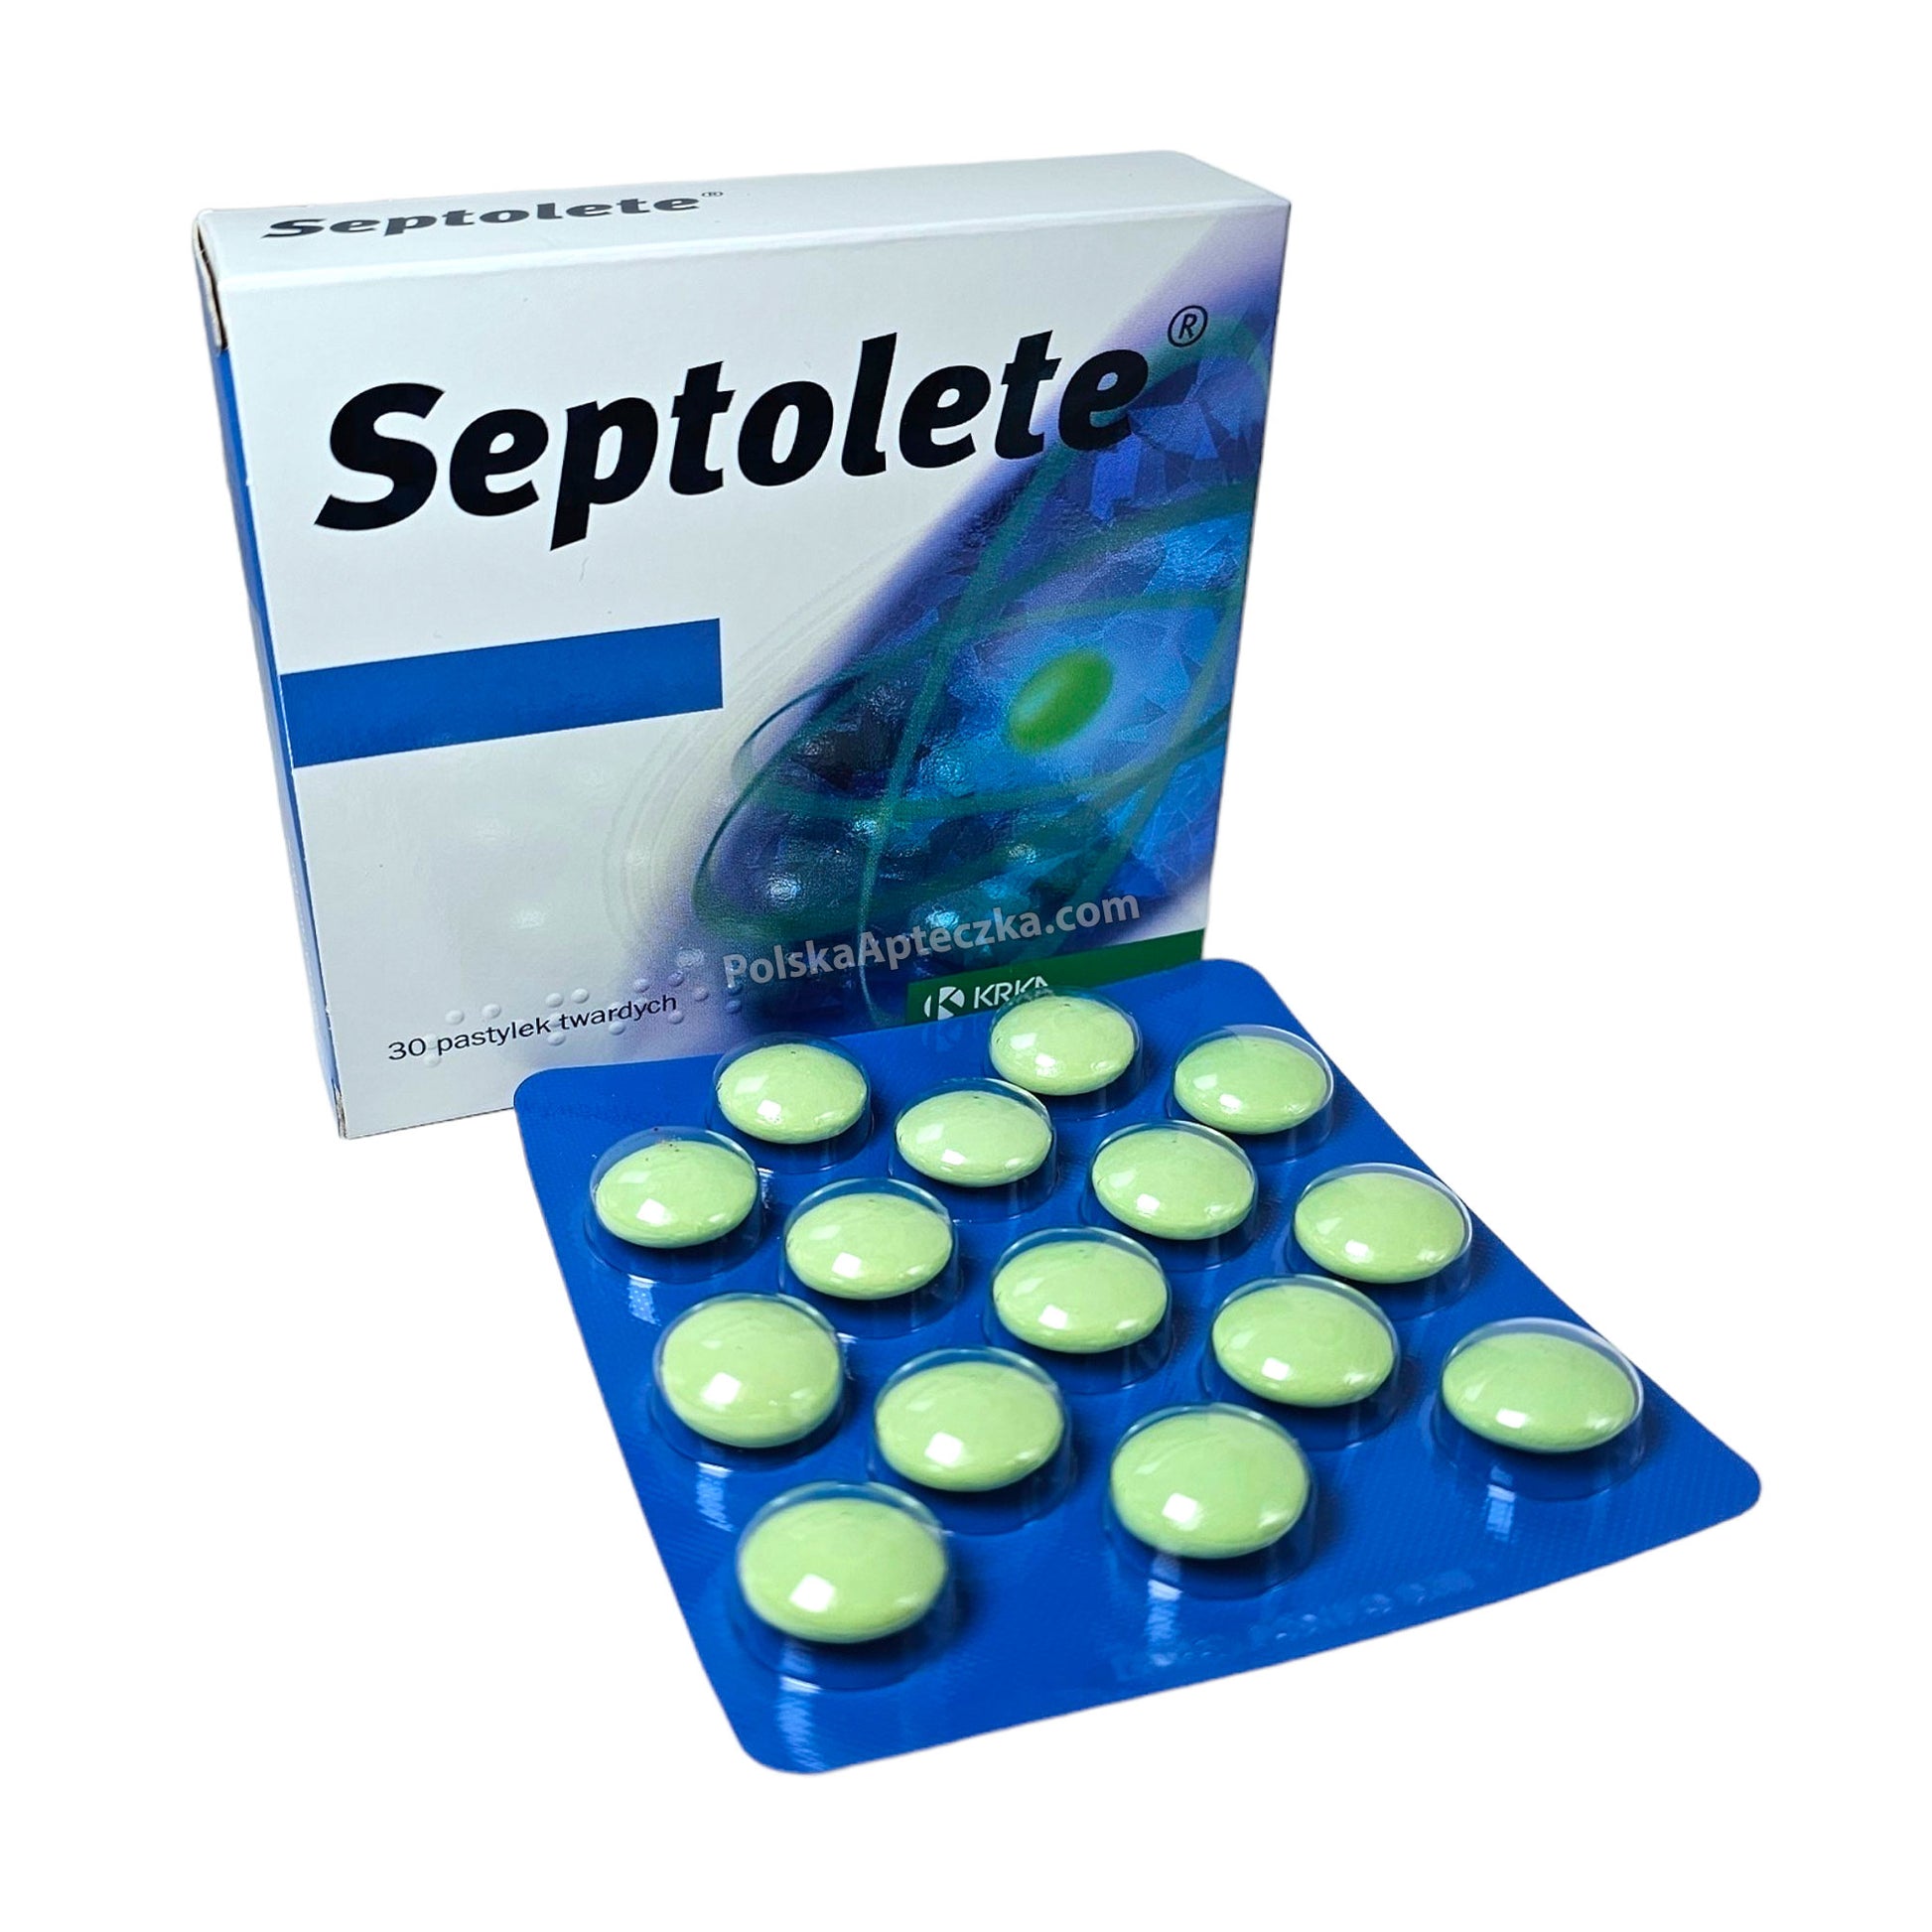 septolete tablets